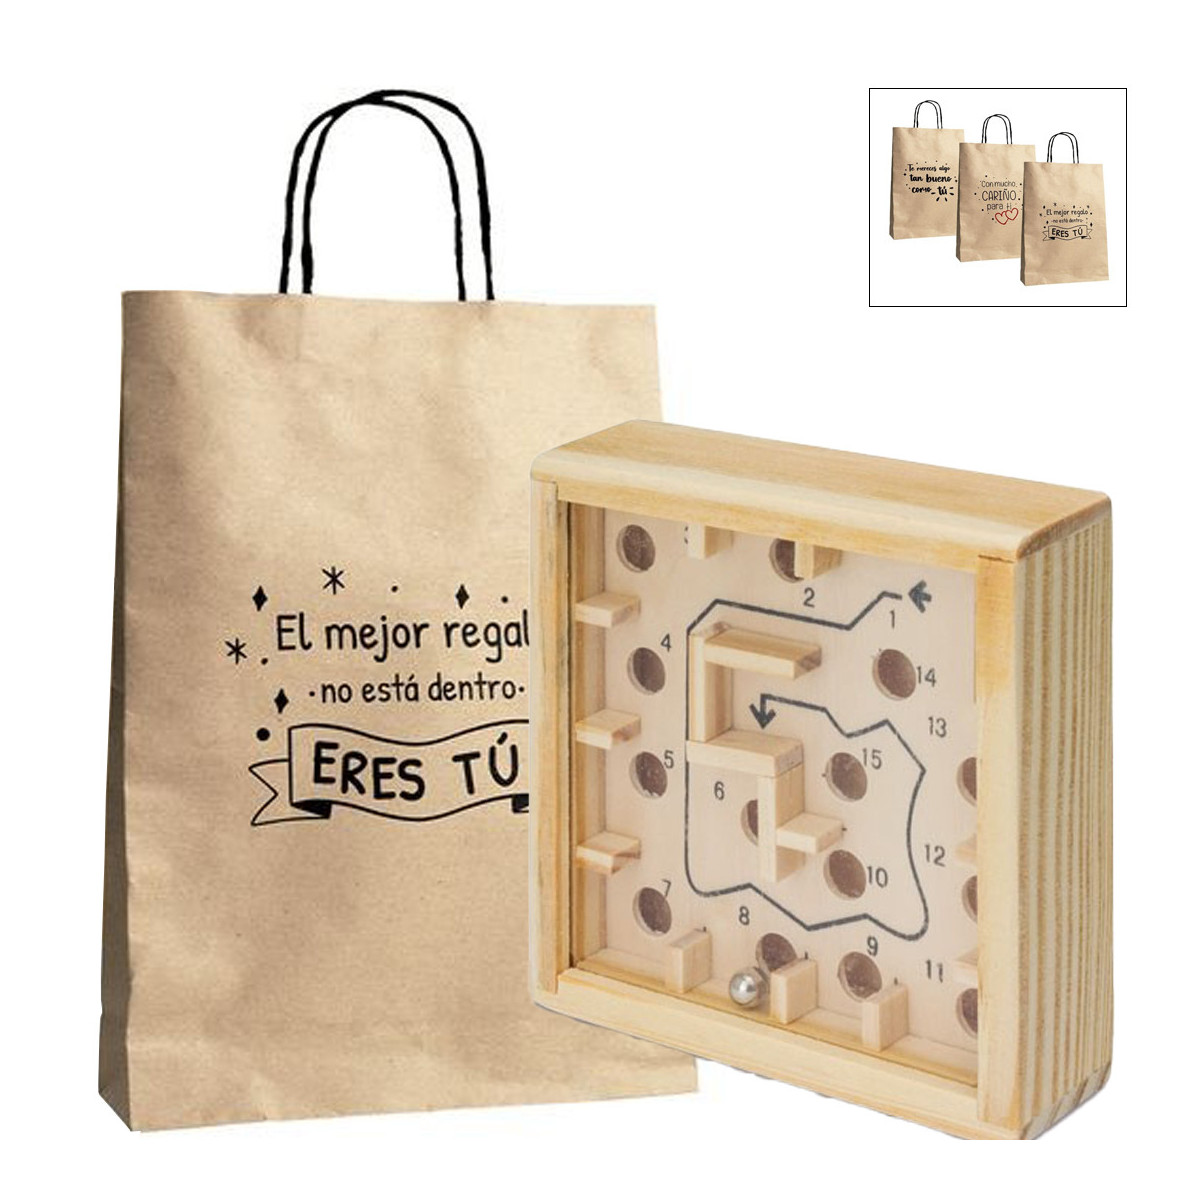 Labirinto com bolinhas de gude em caixa de madeira e apresentado em saco de papel com mensagens